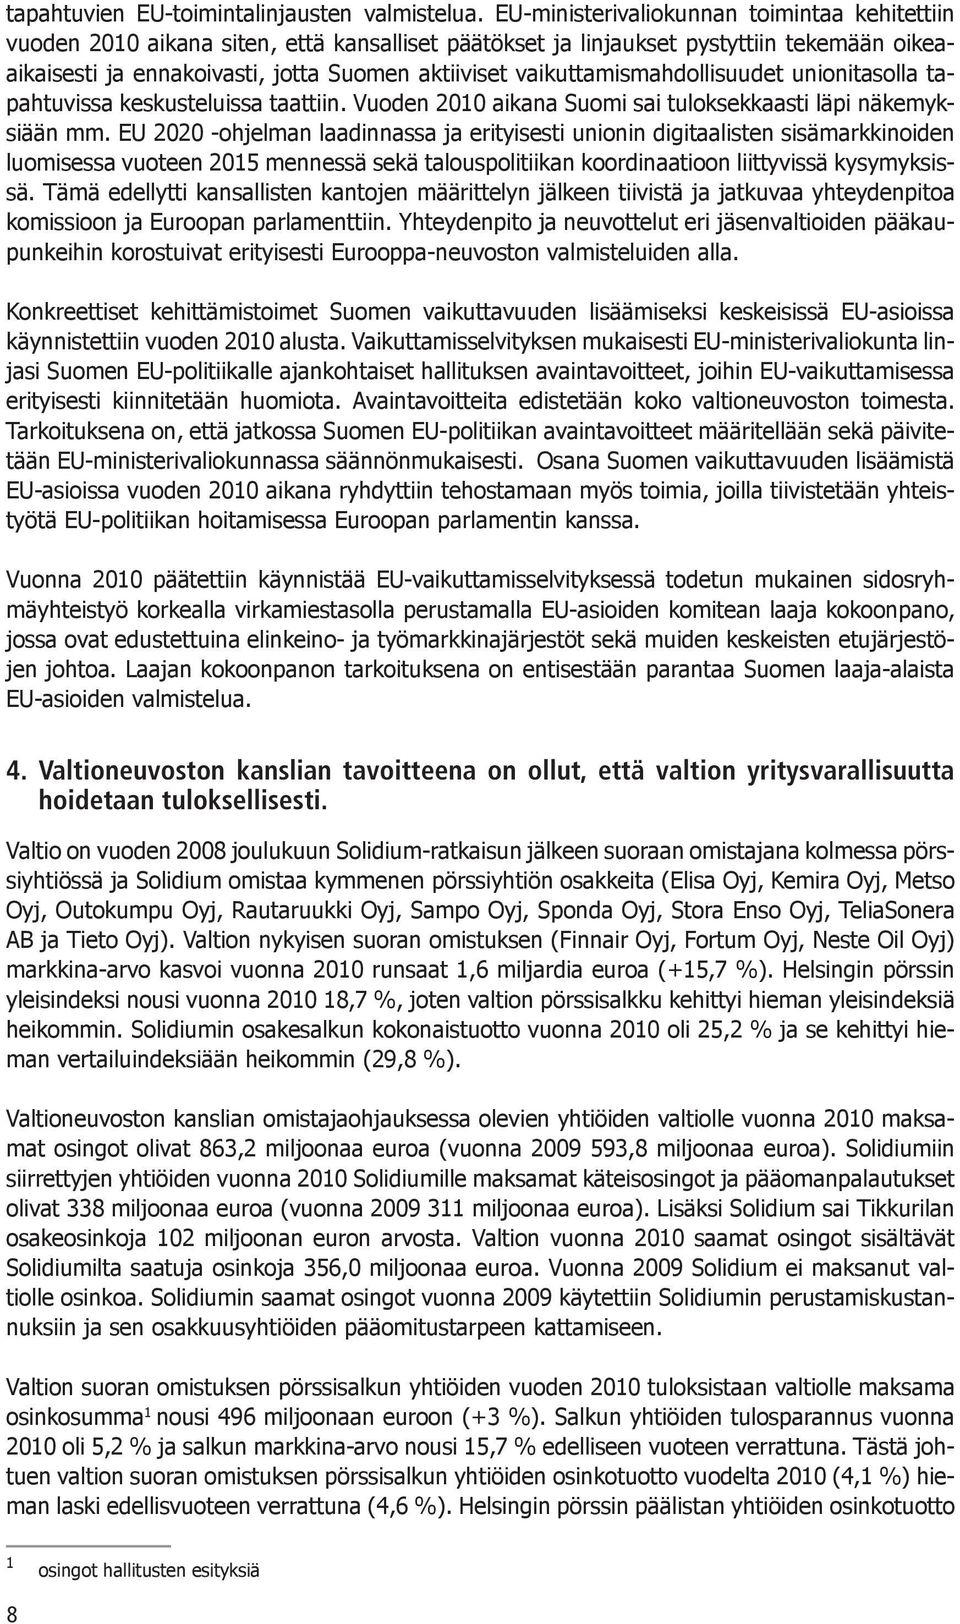 vaikuttamismahdollisuudet unionitasolla tapahtuvissa keskusteluissa taattiin. Vuoden 2010 aikana Suomi sai tuloksekkaasti läpi näkemyksiään mm.